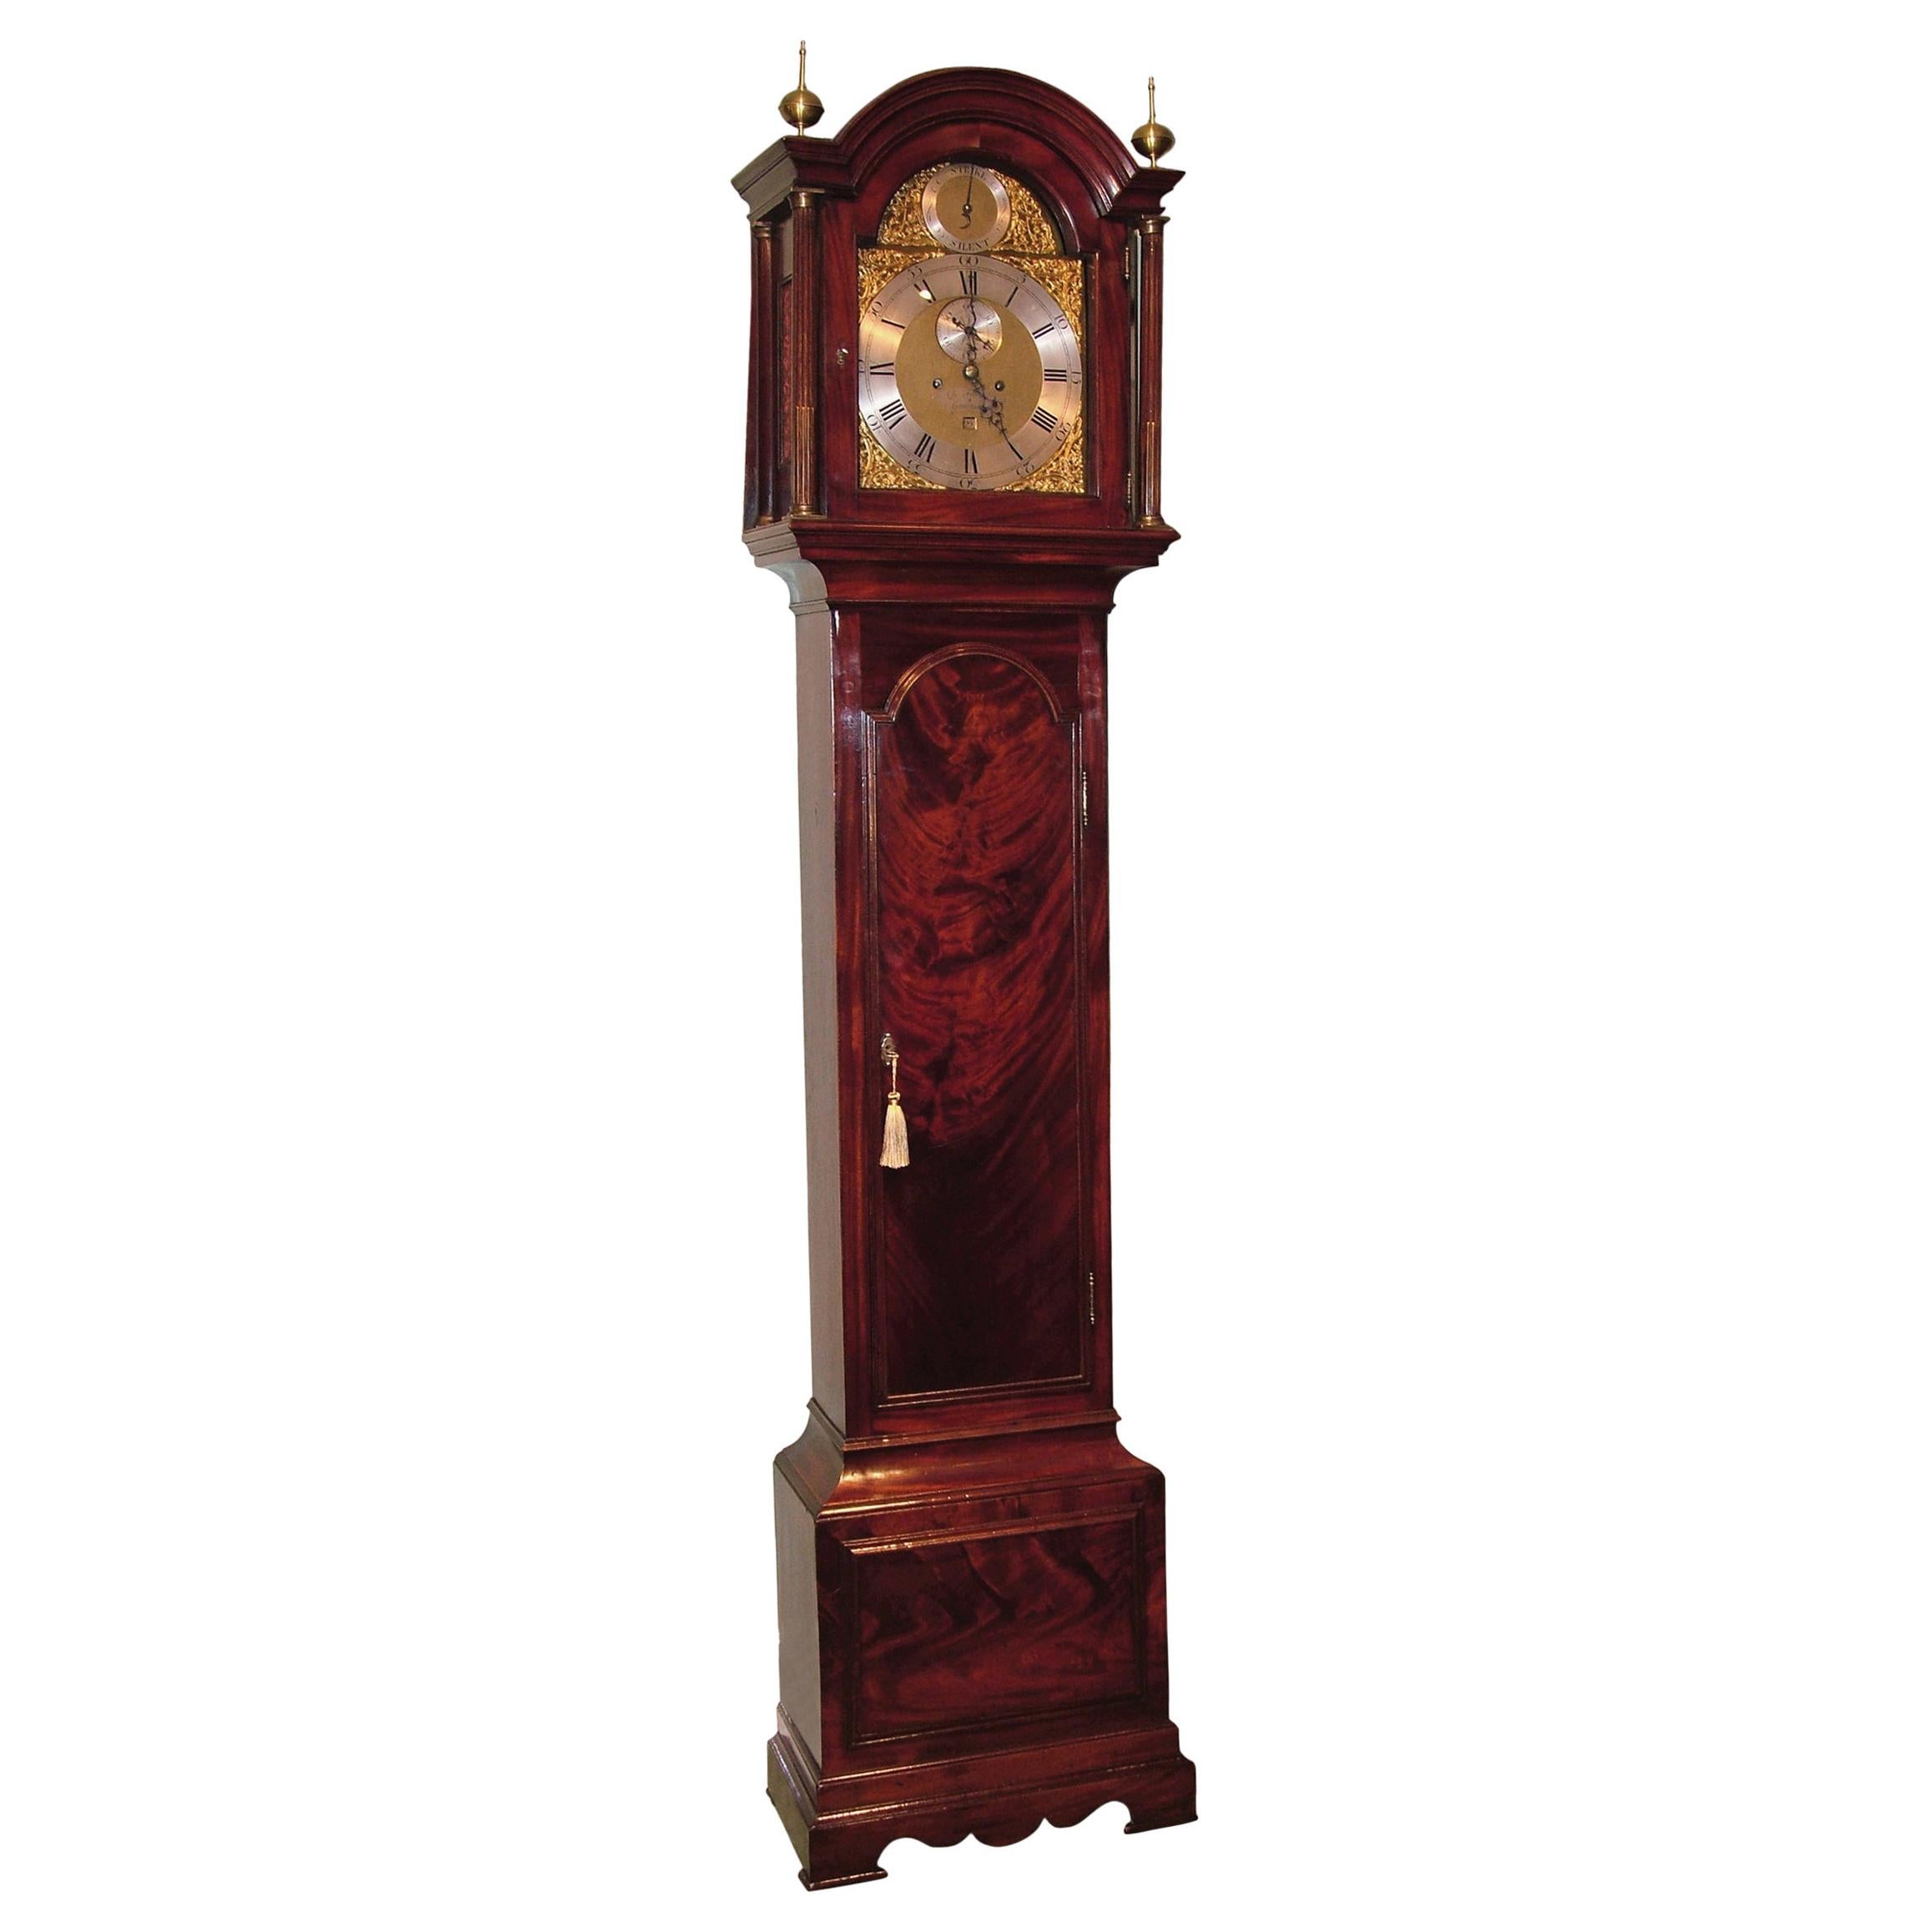 Une horloge à long boîtier en acajou de la fin du 18ème siècle, par B. Francis de Gravesend, ayant un sommet arqué avec des fleurons en laiton et des colonnes cannelées, renfermant un mouvement à sonnerie de huit jours avec un cadran argenté et des